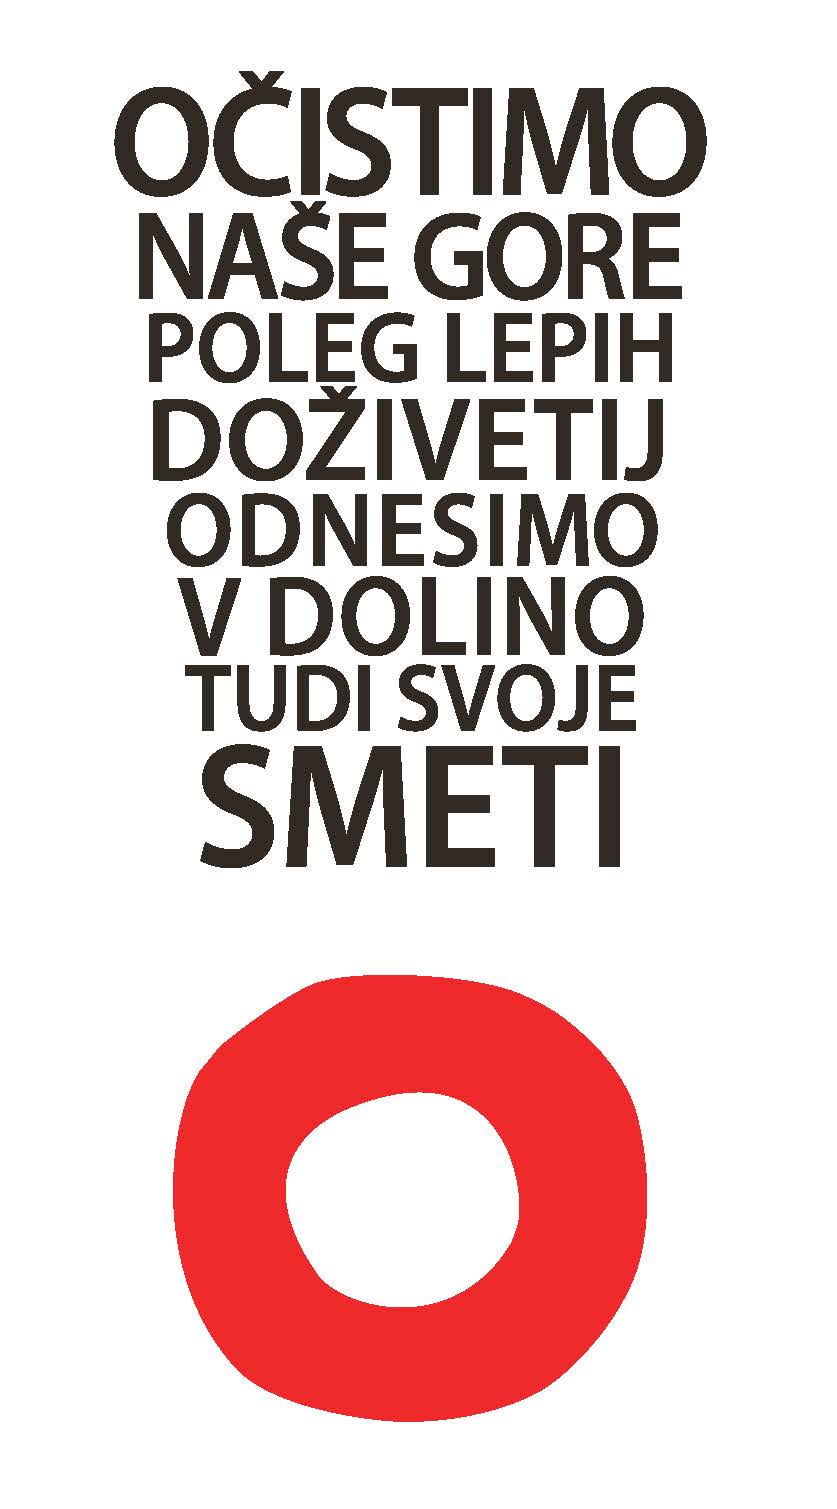 Ocisimo_nase_gore_logo